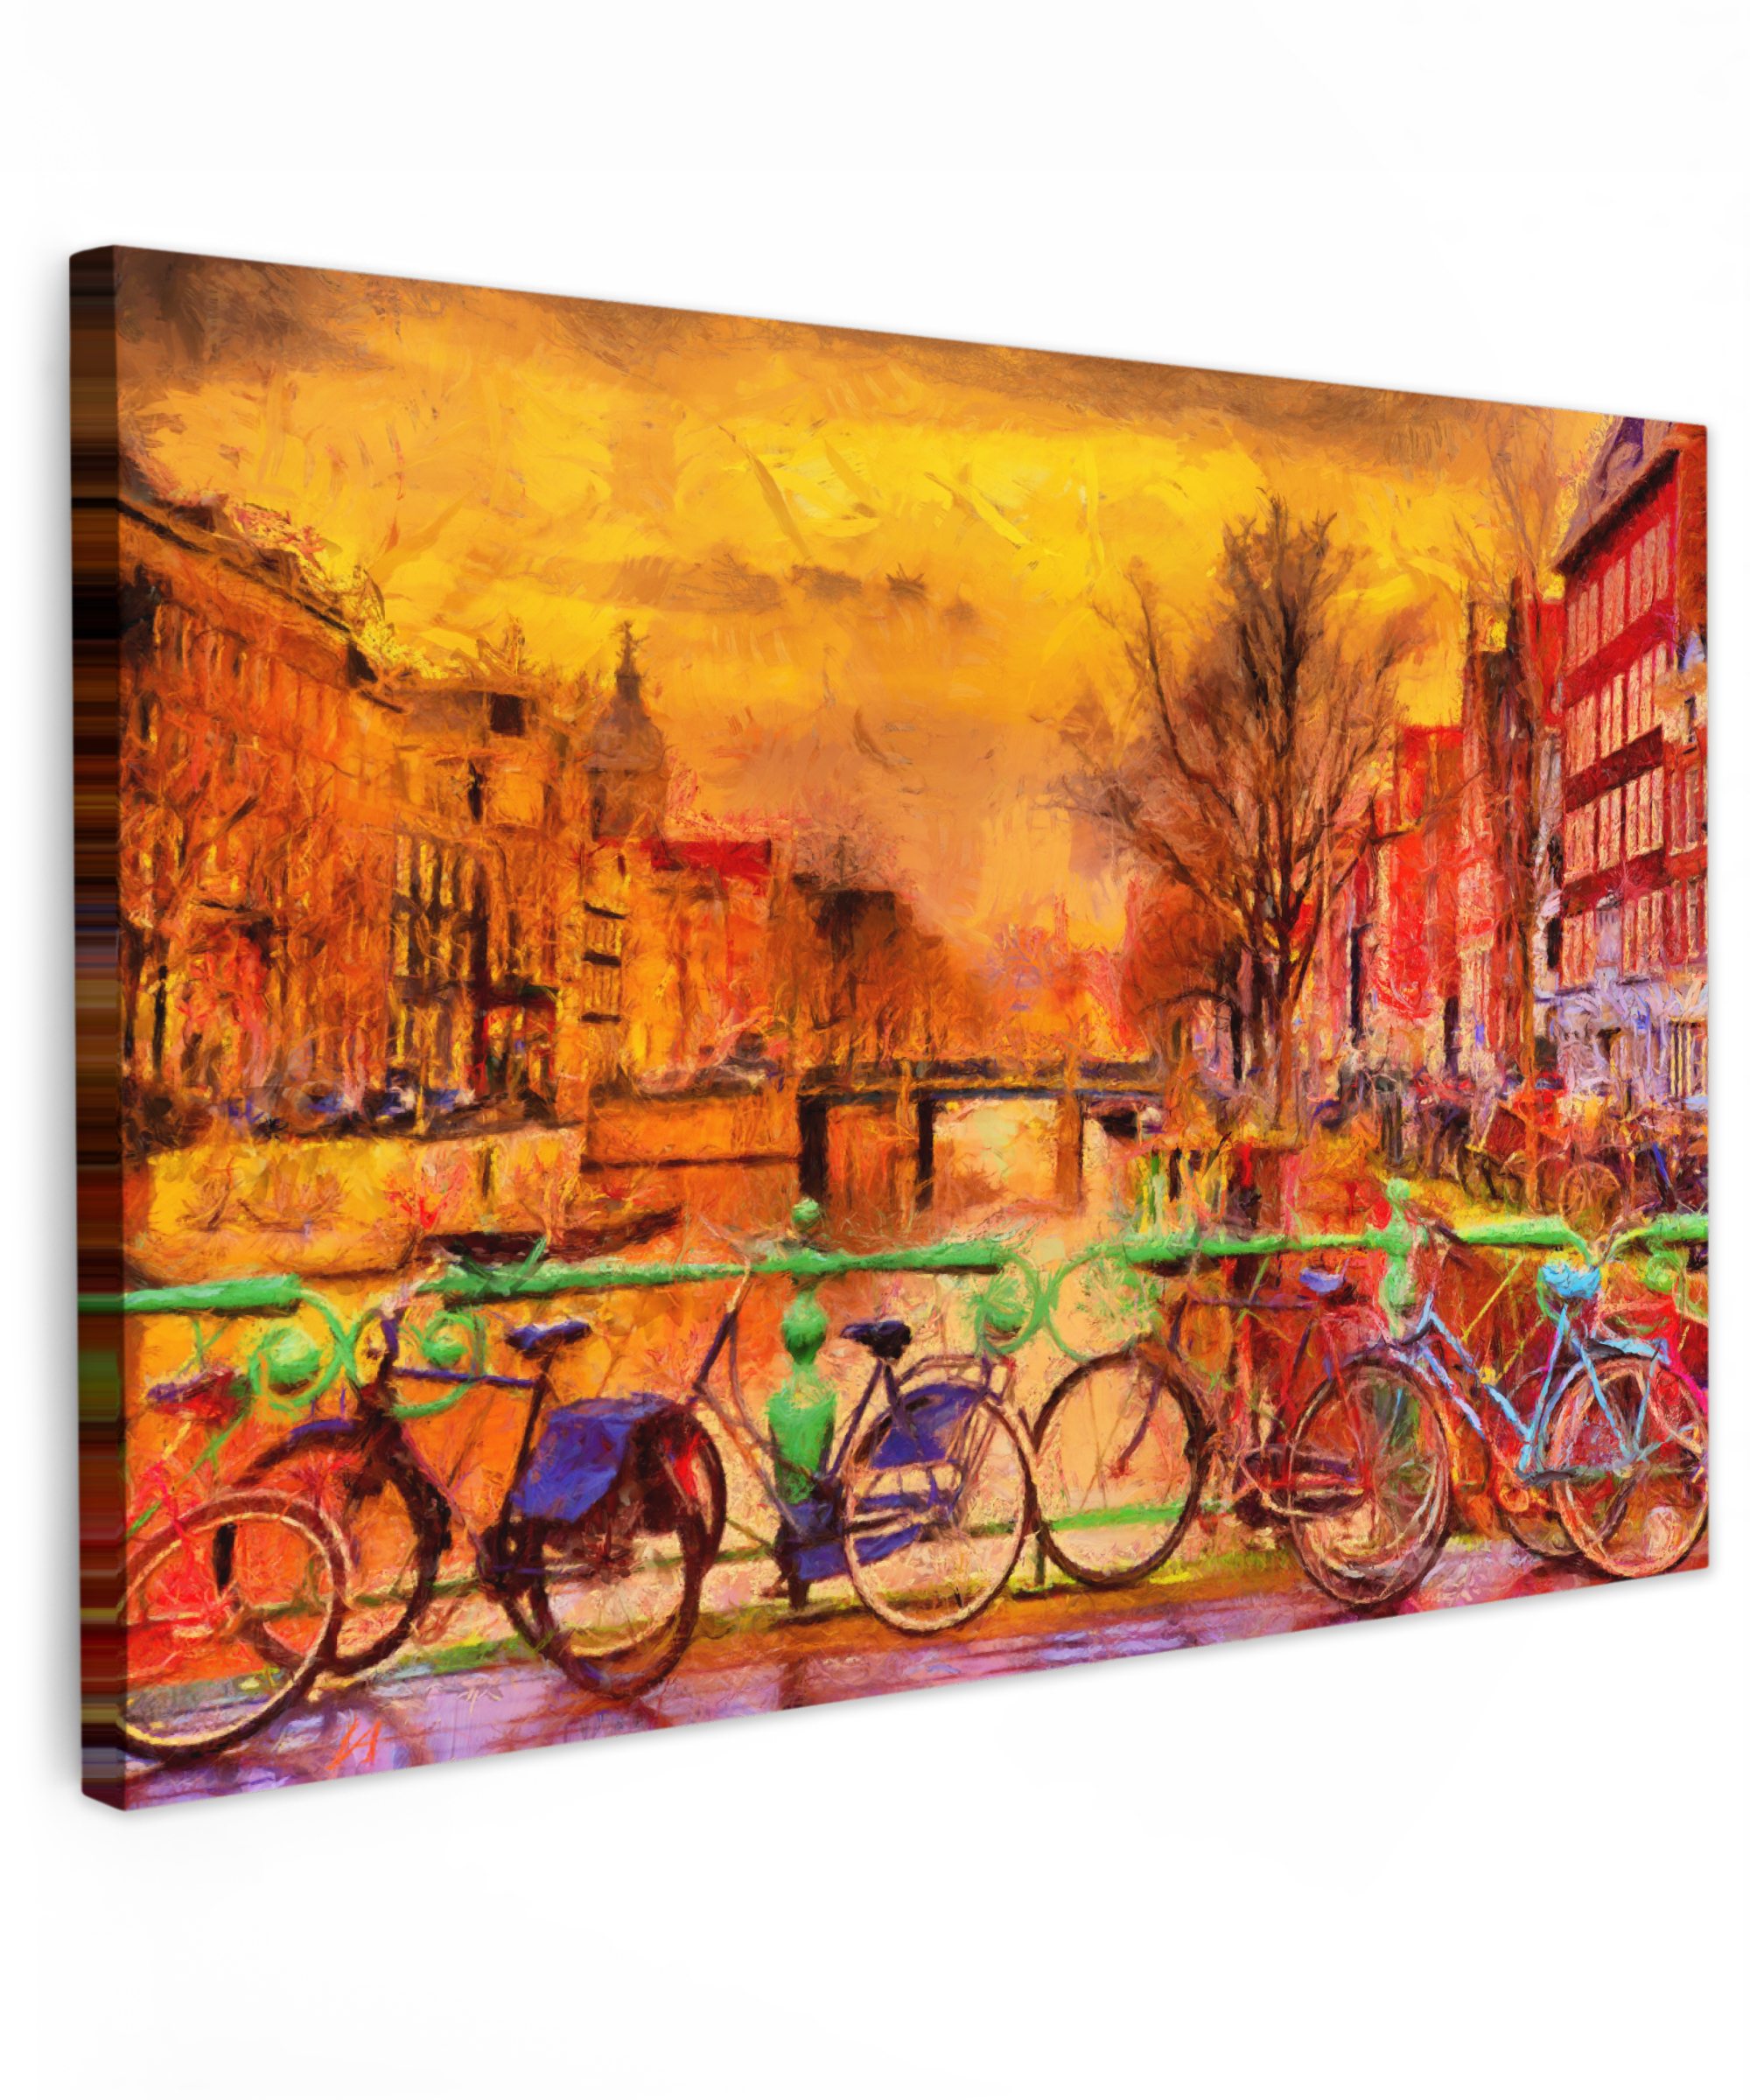 Tableau sur toile - Peinture - Vélo - Amsterdam - Canal - Huile